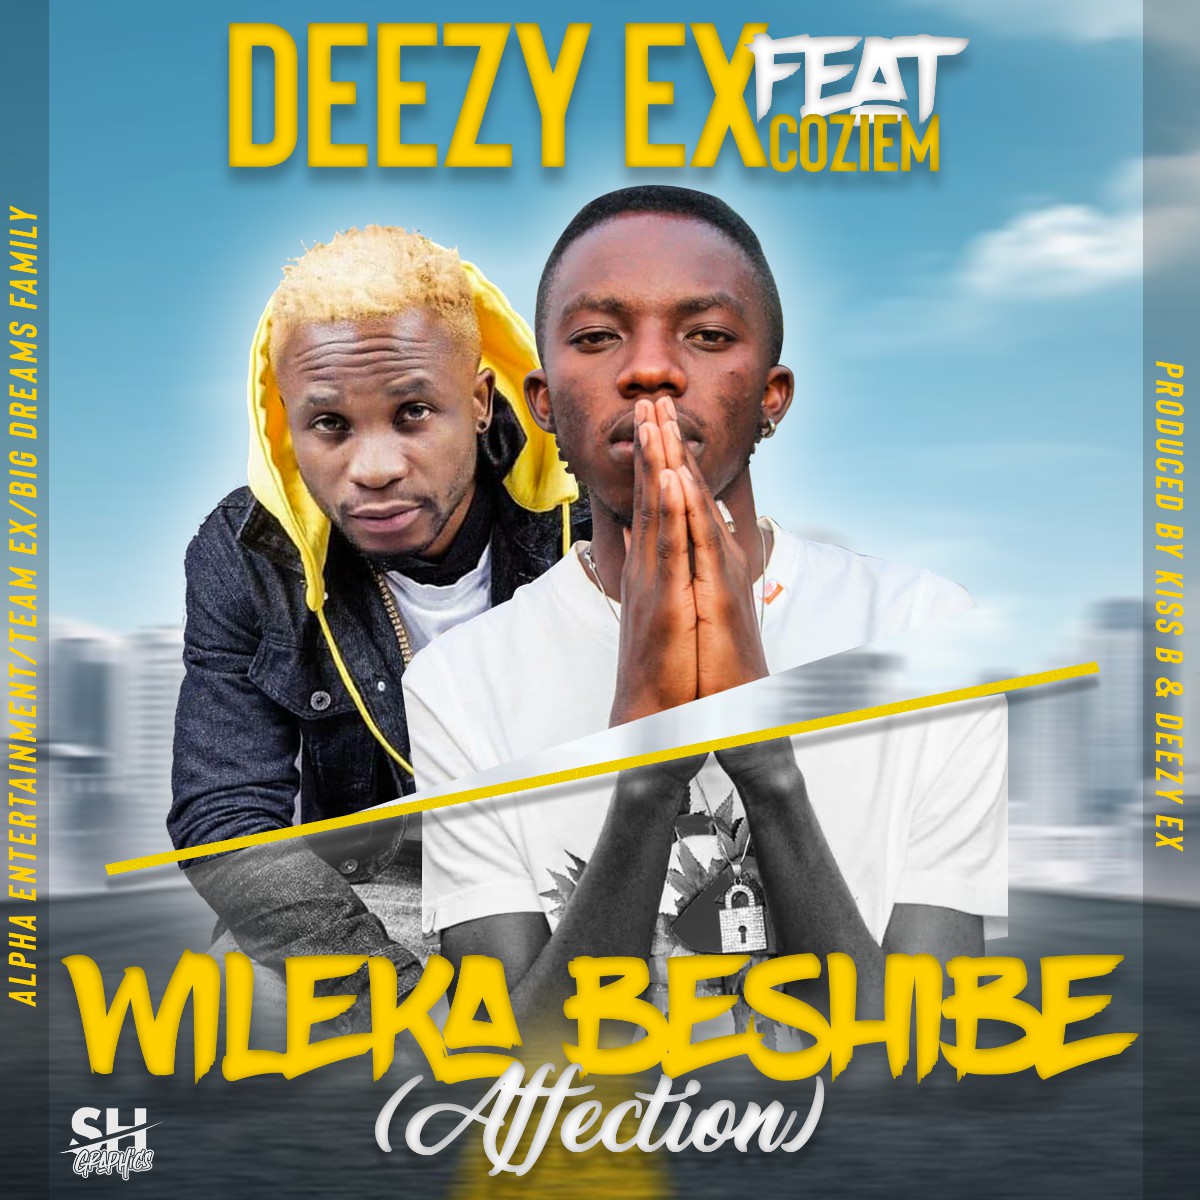 Deezy Ex ft. Coziem - Wileka Beshibe (Affection)